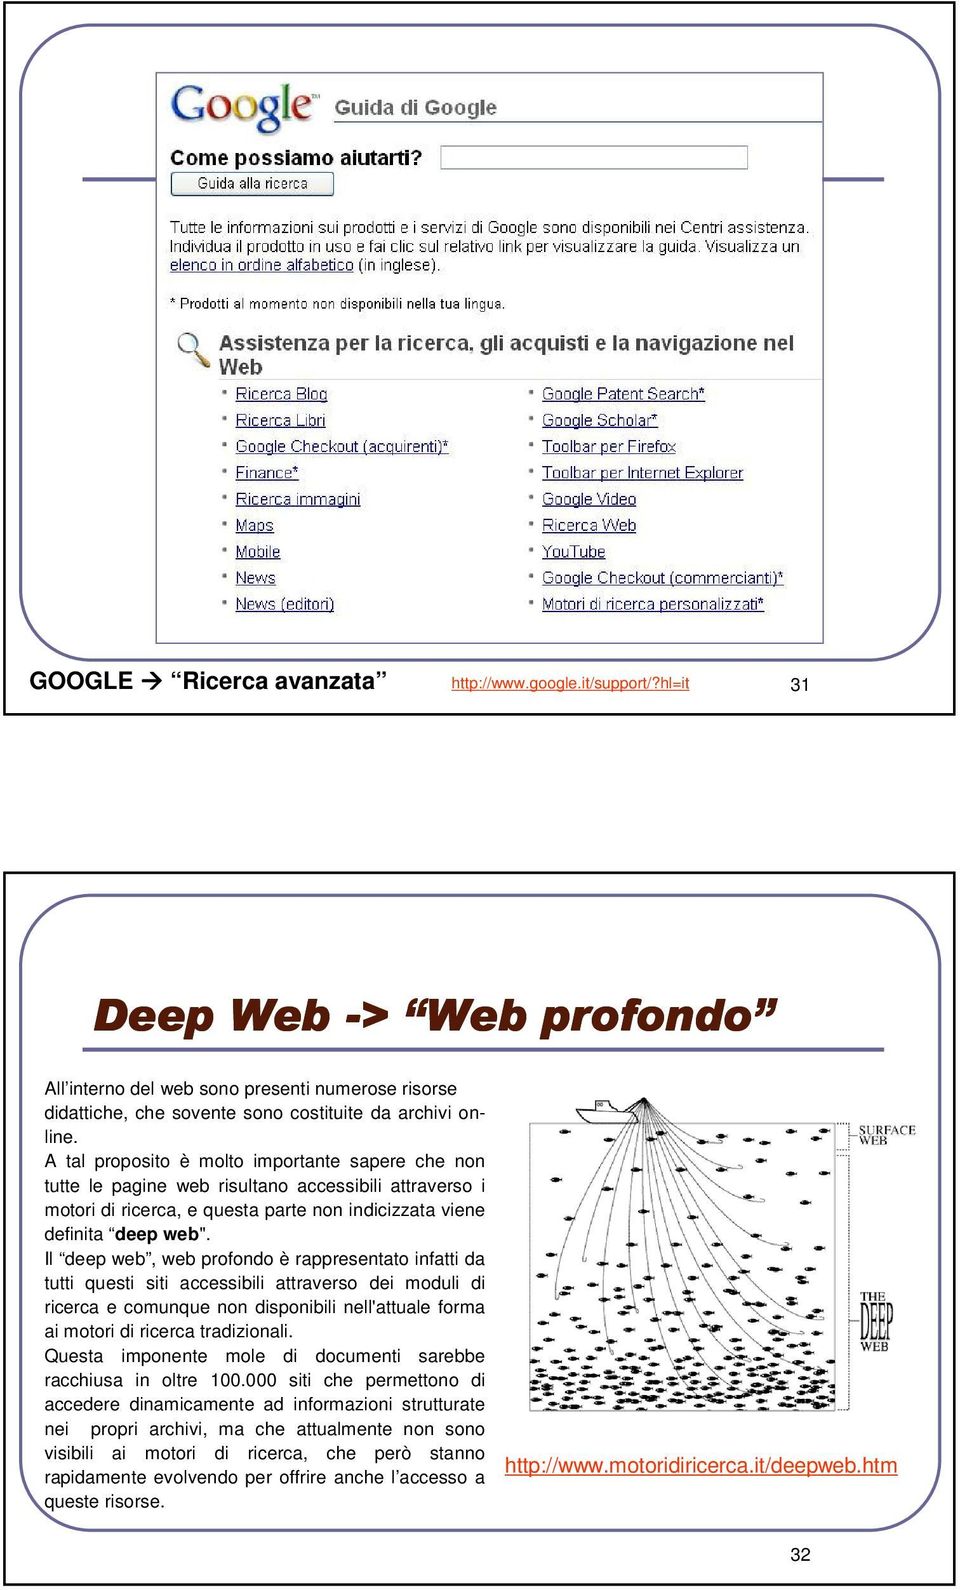 Il deep web, web profondo è rappresentato infatti da tutti questi siti accessibili attraverso dei moduli di ricerca e comunque non disponibili nell'attuale forma ai motori di ricerca tradizionali.